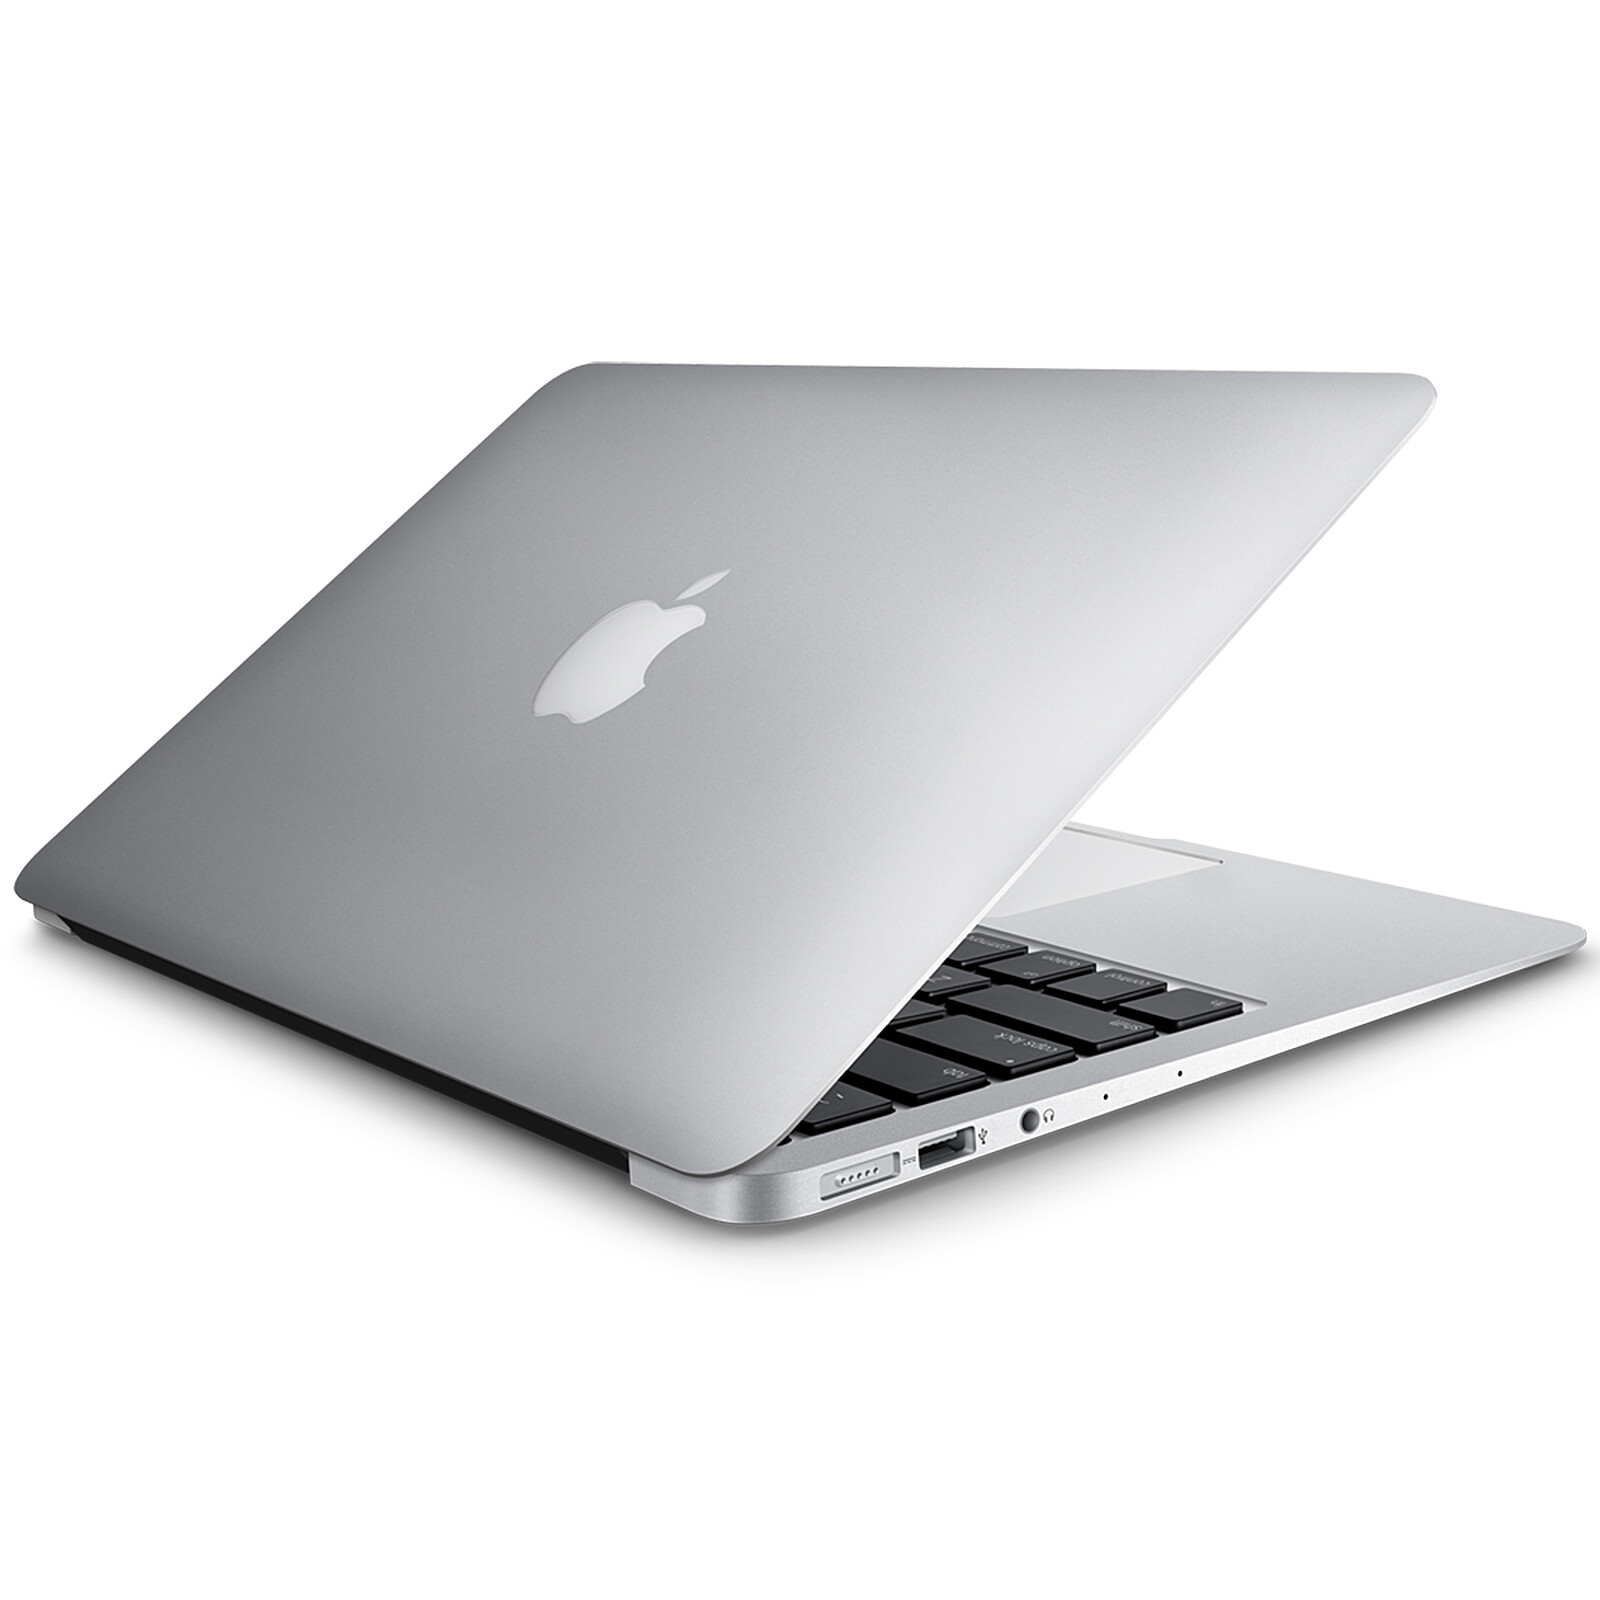 Chargeur pour MacBook et MacBook Air - Chargeur pour MacBook Air 13 pouces ( 2017 /